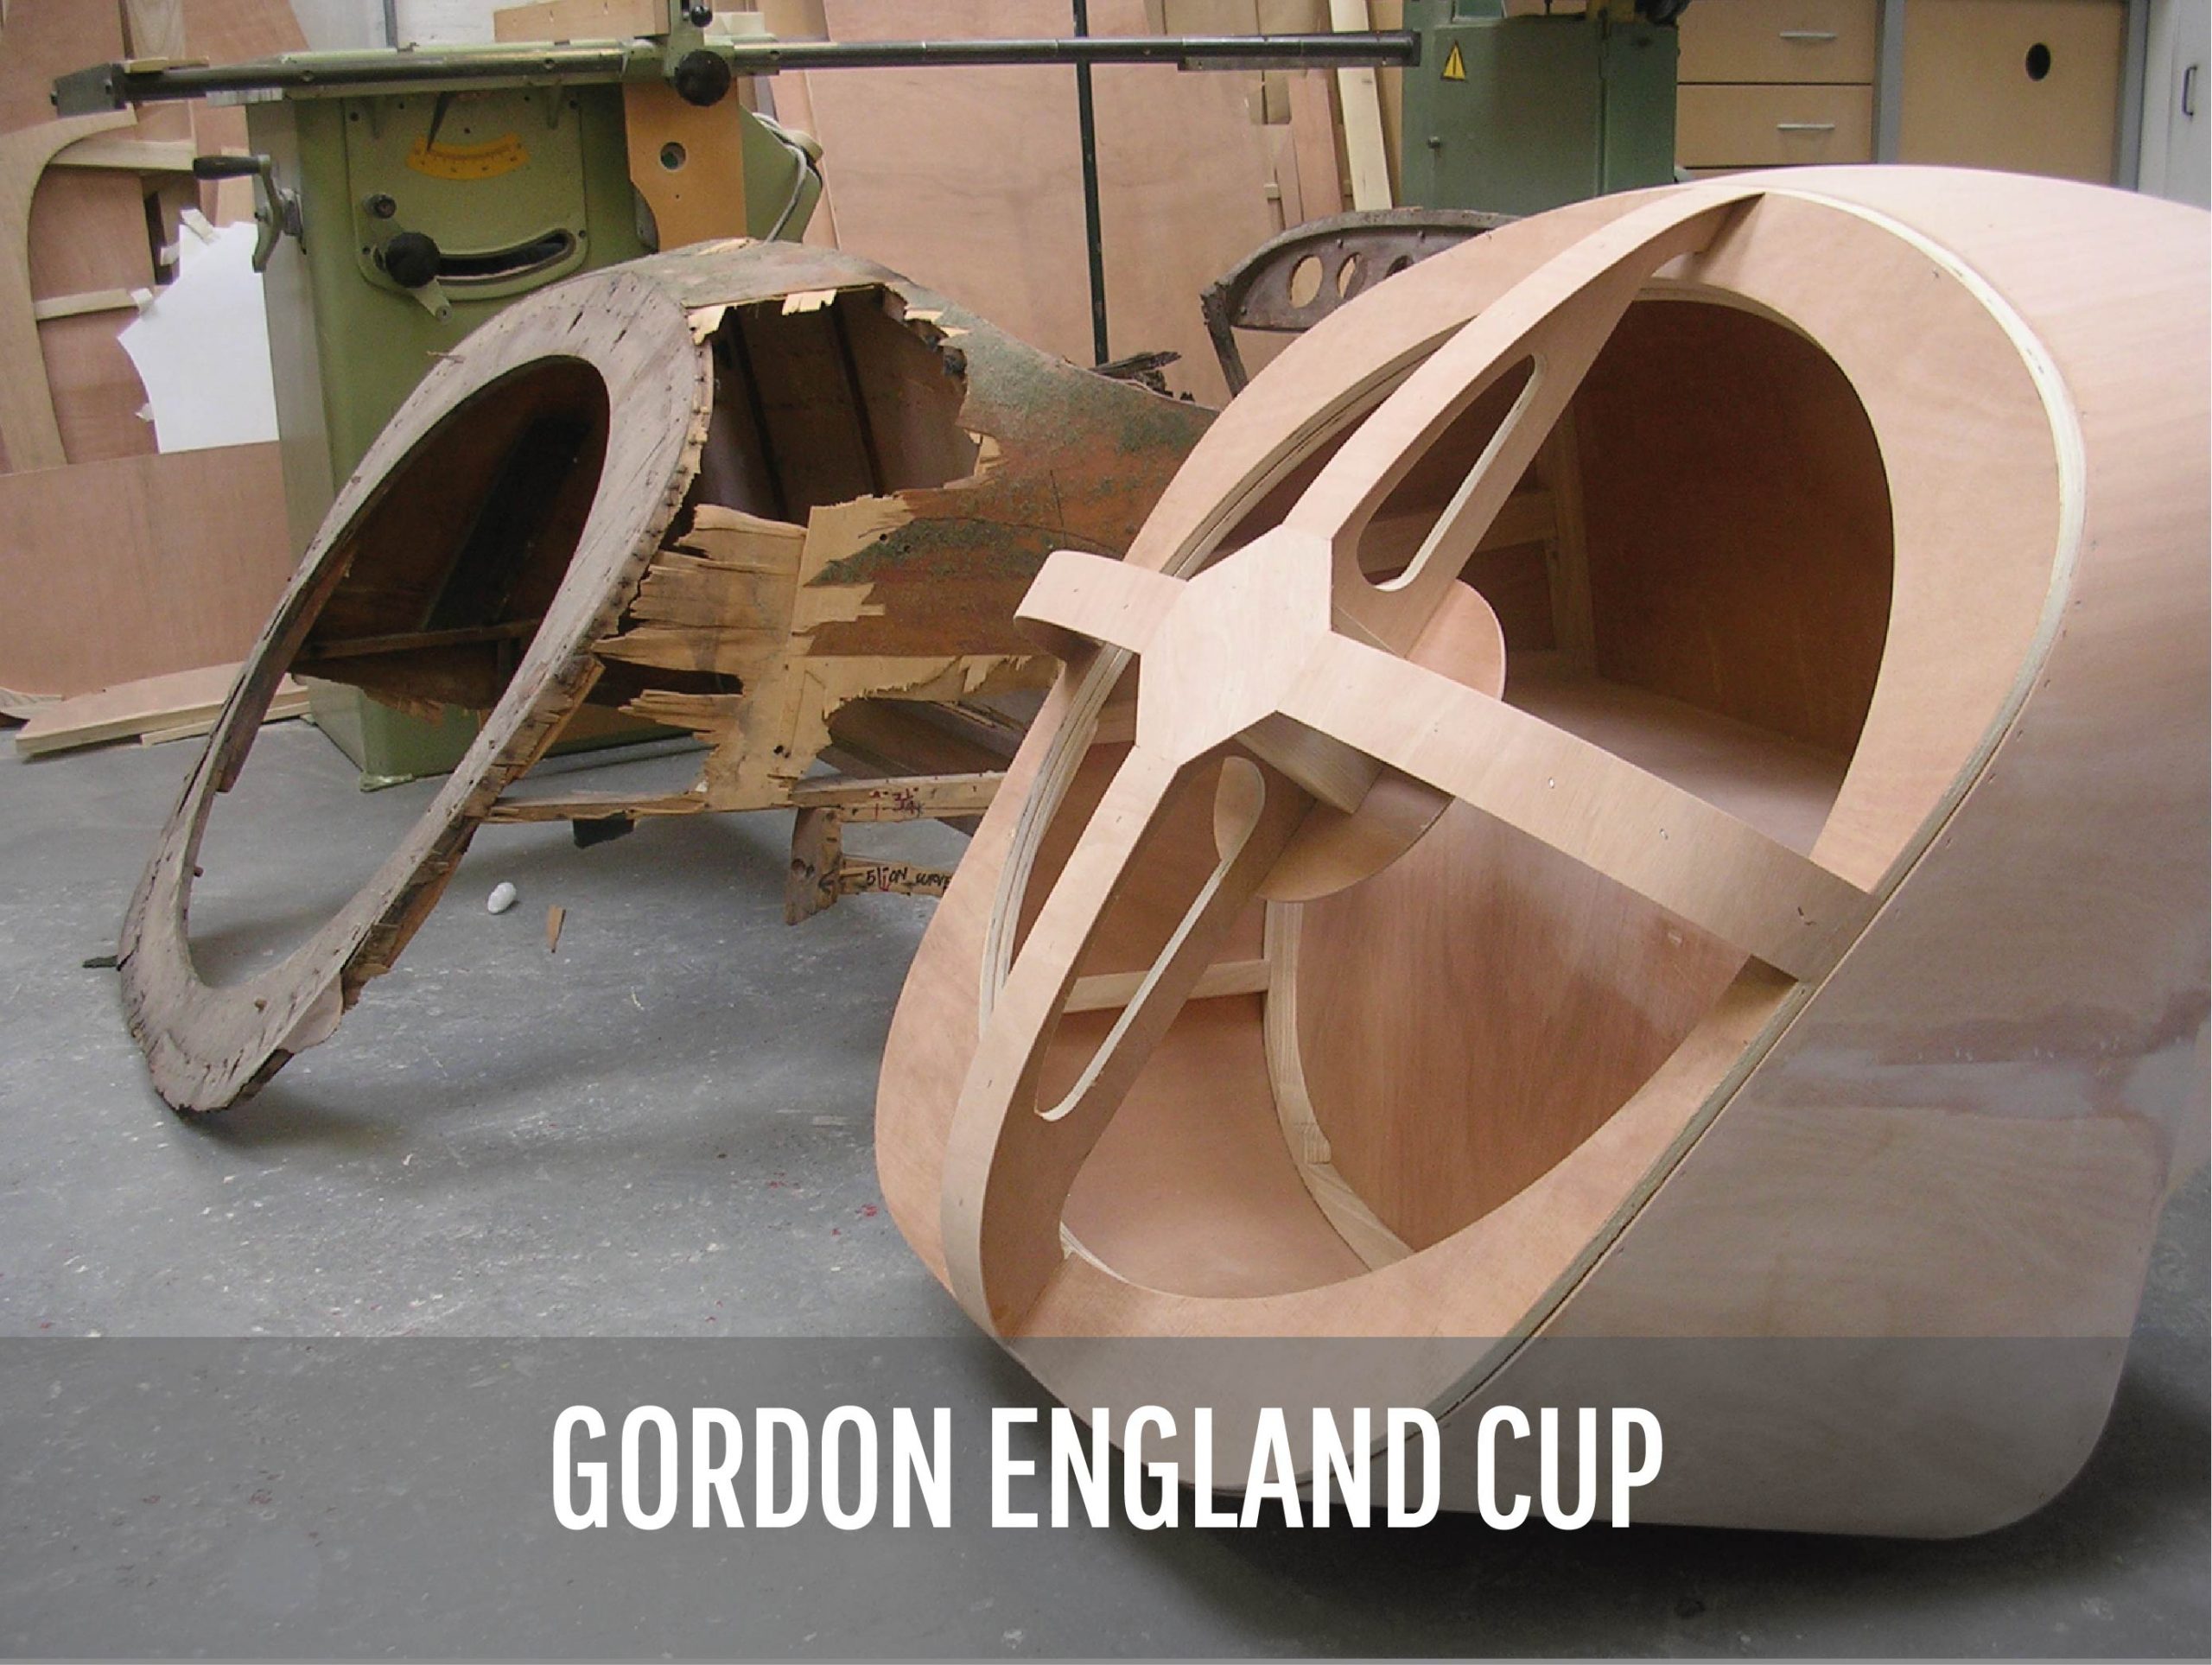 Peter Naulls - Gordon England Cup vintage car